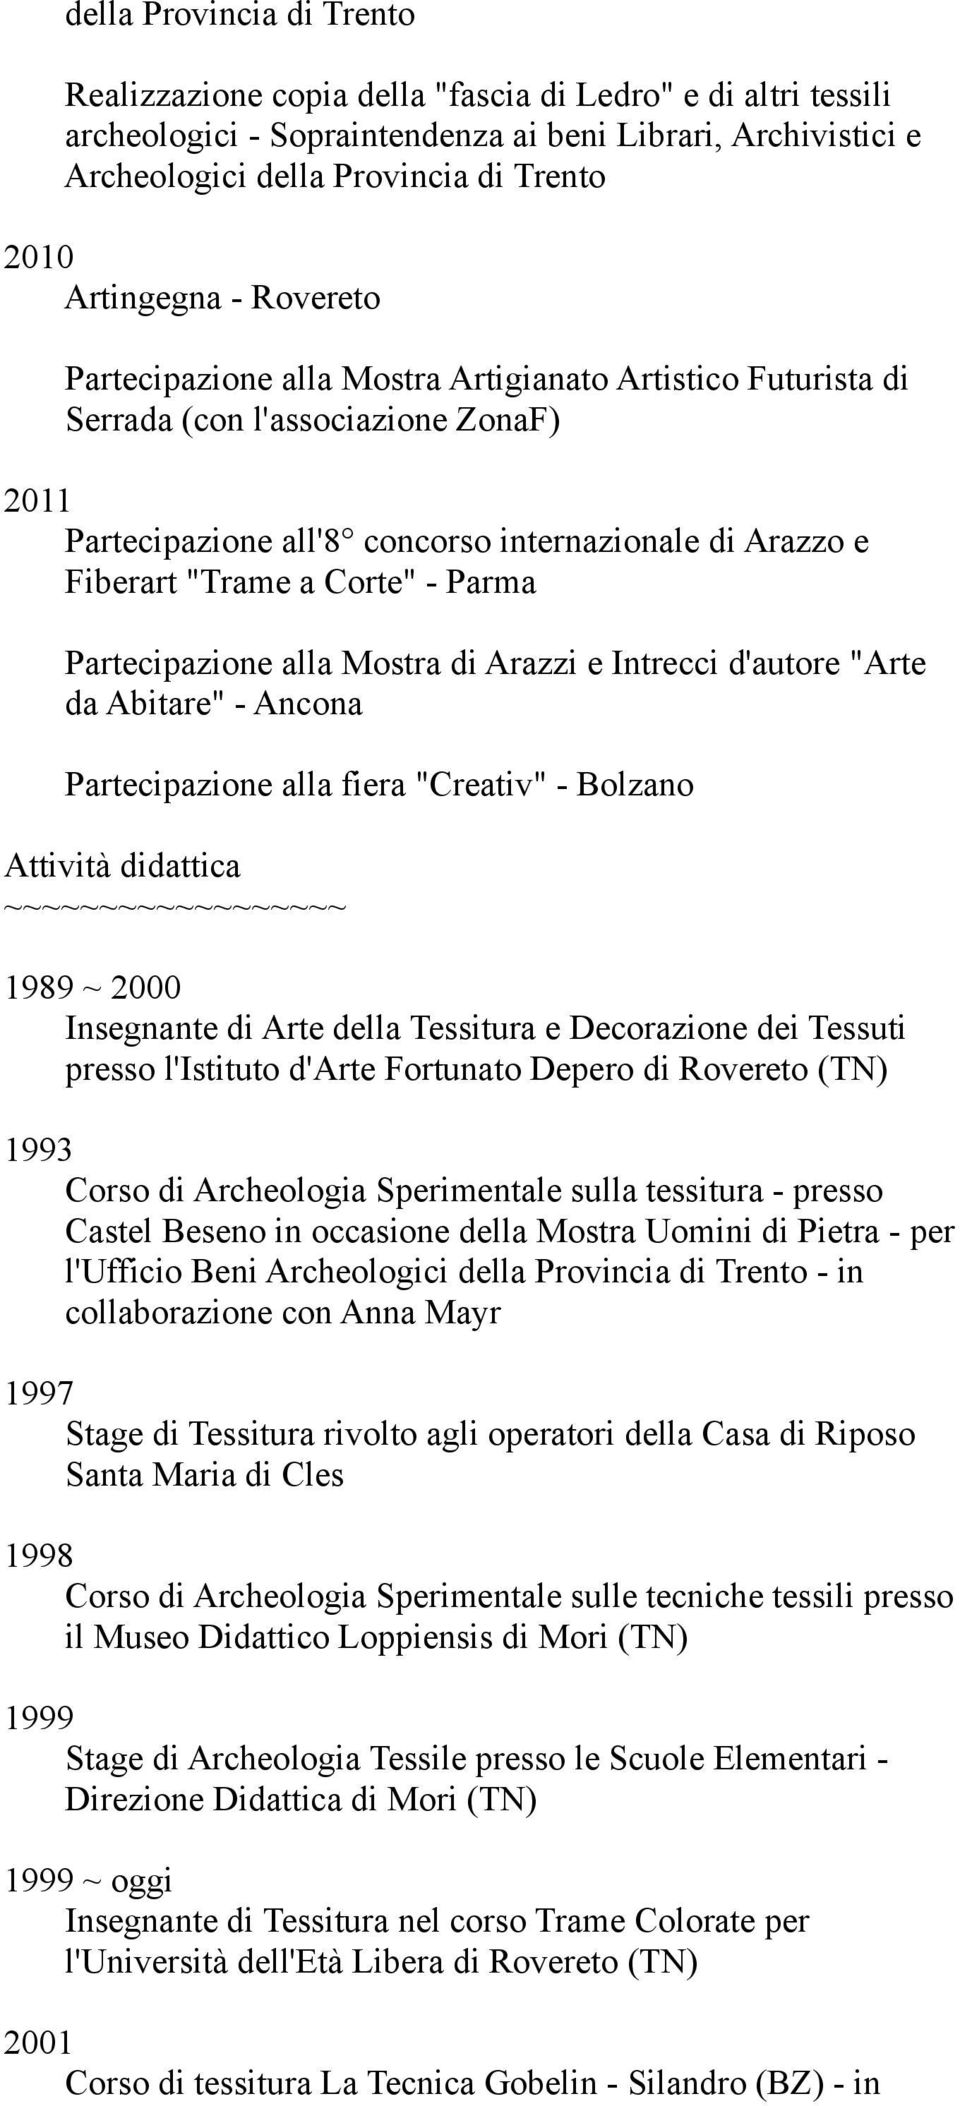 Corte" - Parma Partecipazione alla Mostra di Arazzi e Intrecci d'autore "Arte da Abitare" - Ancona Partecipazione alla fiera "Creativ" - Bolzano Attività didattica ~~~~~~~~~~~~~~~~~~ 1989 ~ 2000